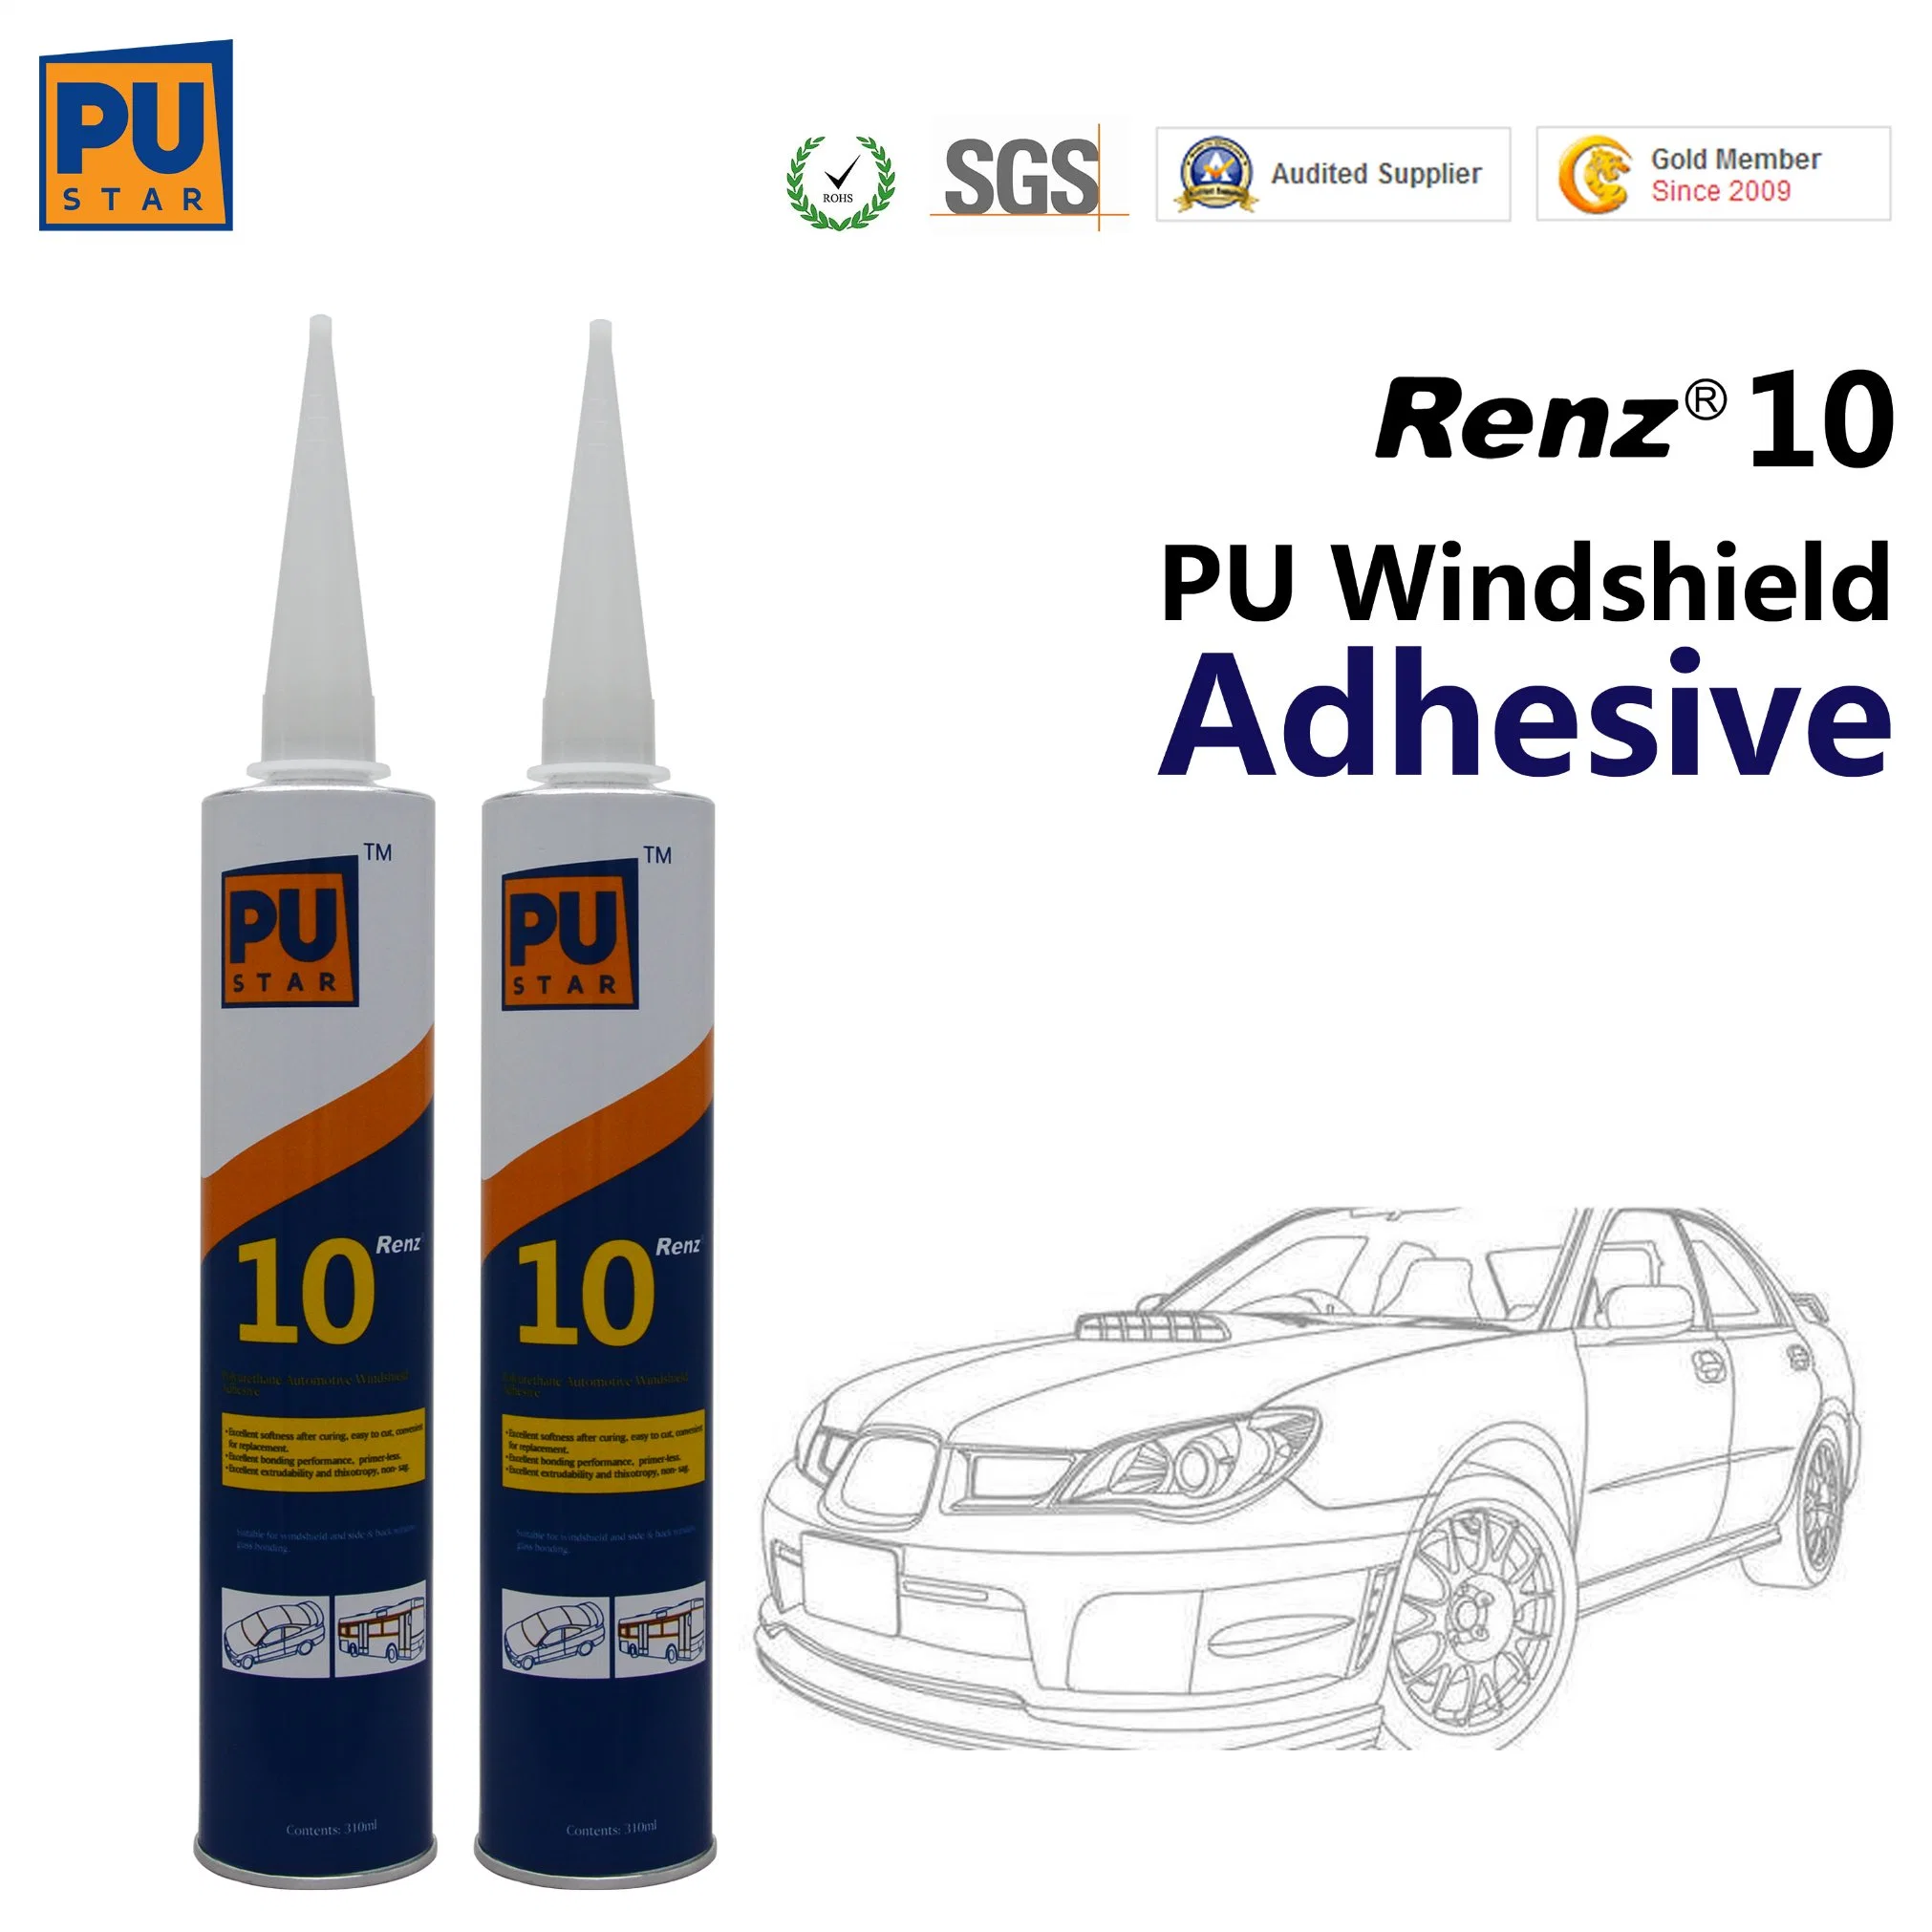 La sustitución de parabrisas de poliuretano Adherente Renz10